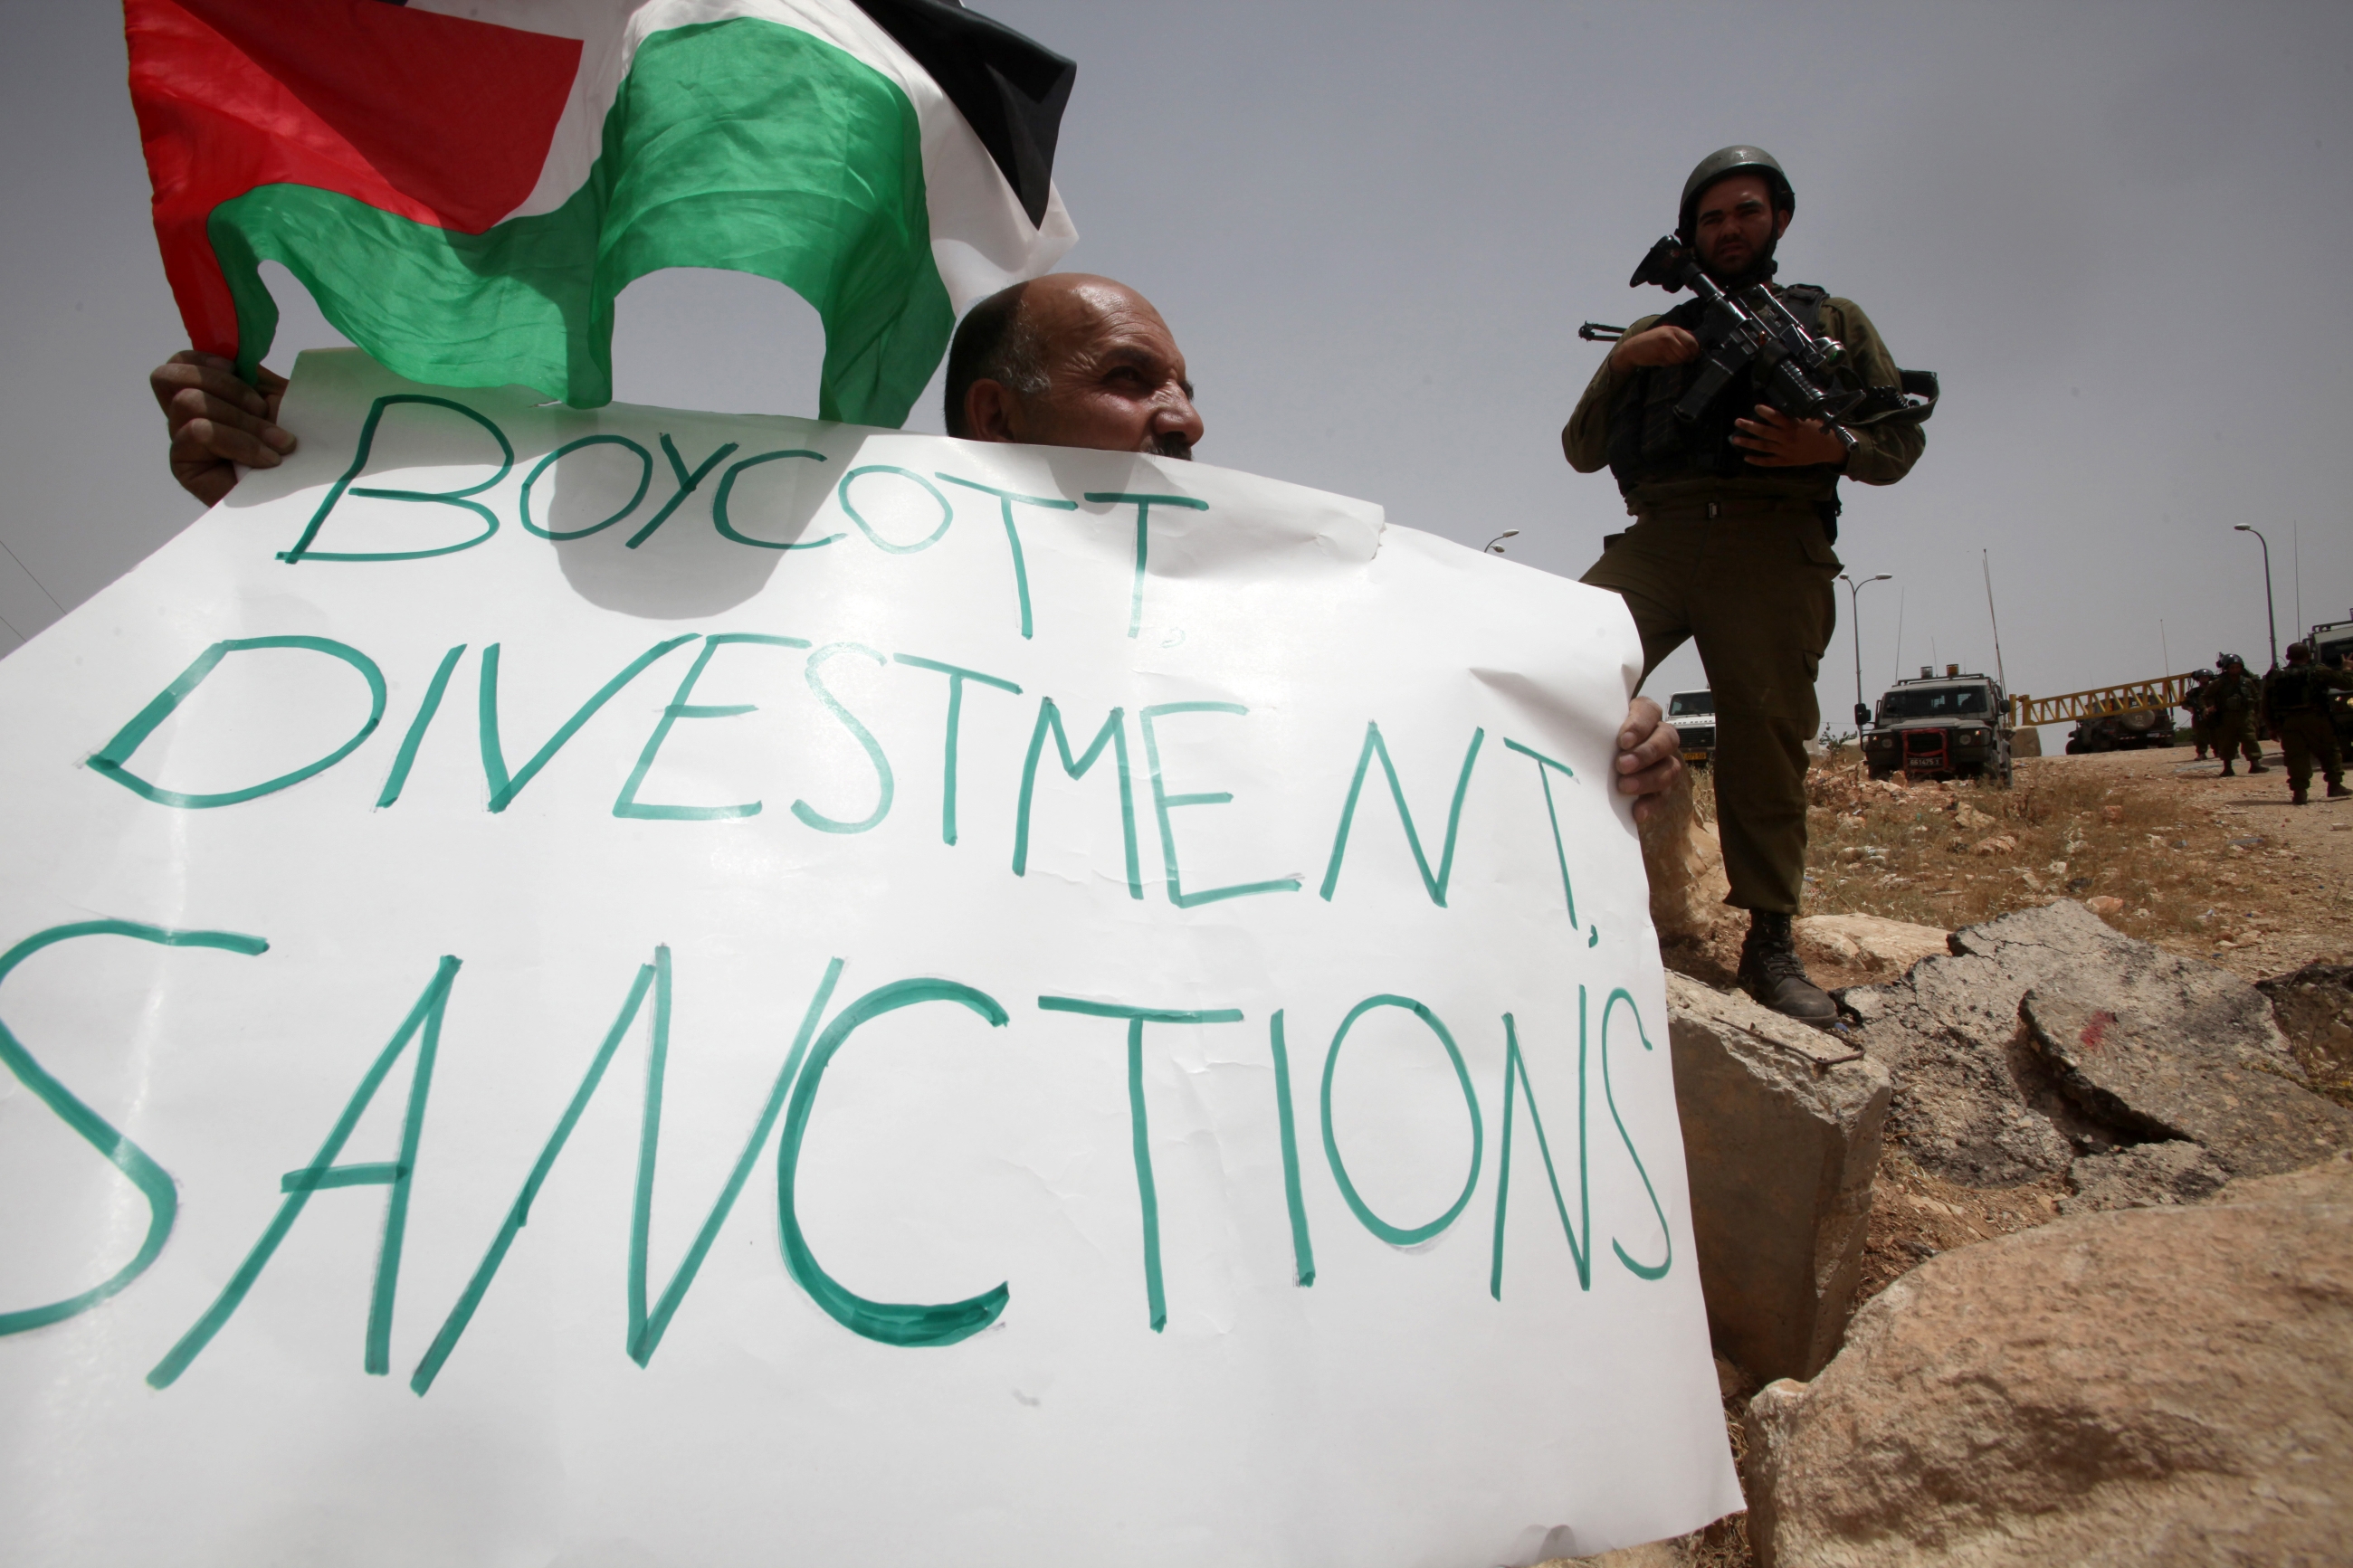 « Le boycott des produits israéliens, comme celui de tout autre pays, fait partie intégrante de la liberté d’expression compte tenu de ses motivations politiques » explique Bertrand Heilbronn (AFP)